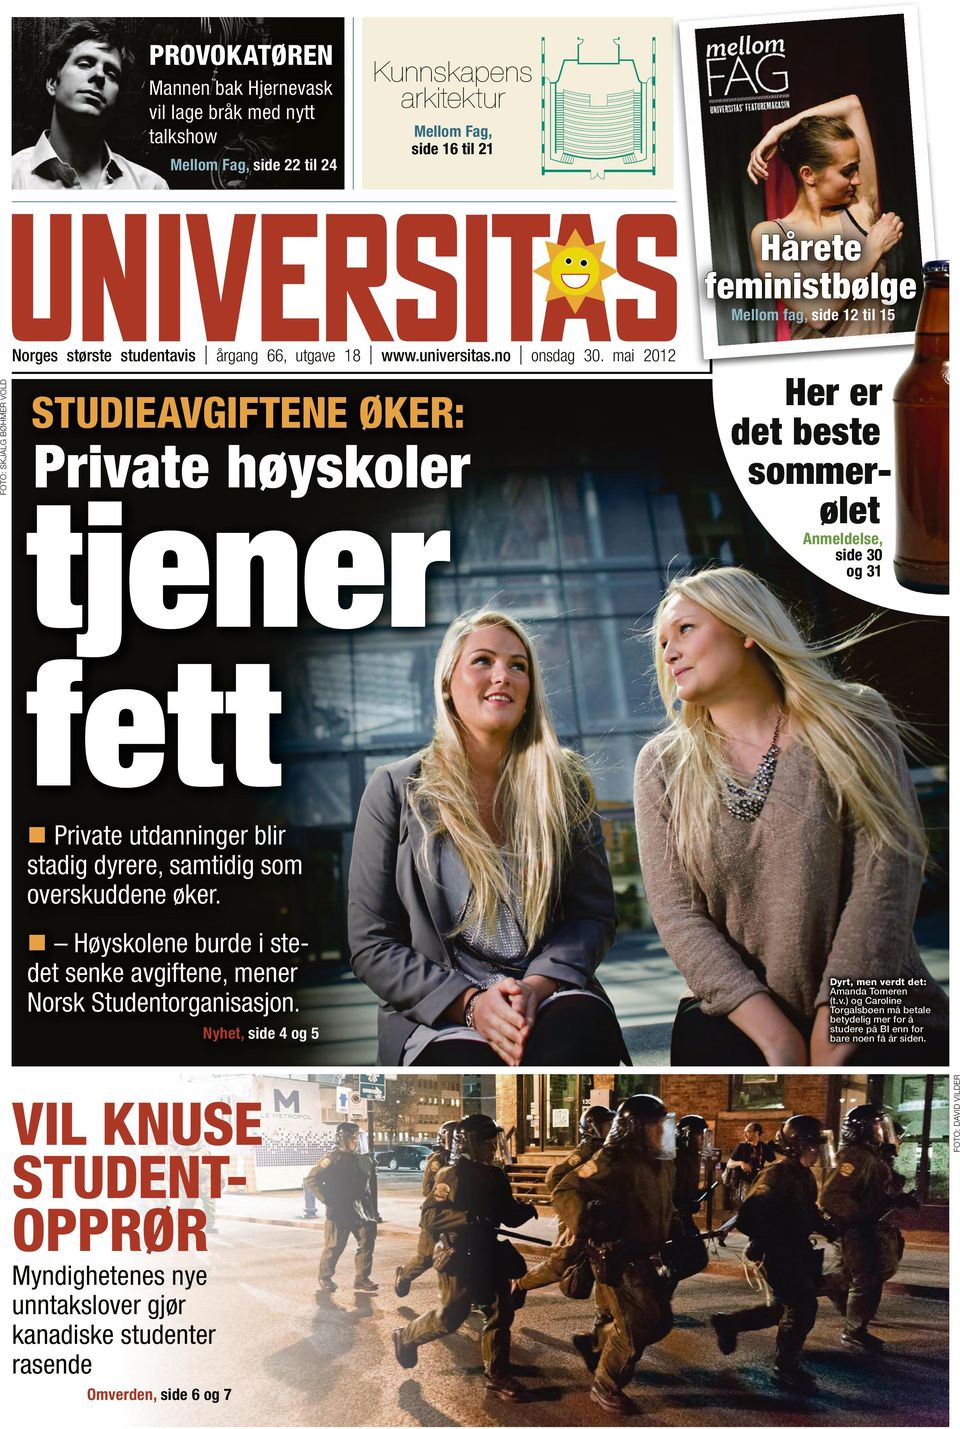 Høyskolene burde i stedet senke avgiftene, mener Norsk Studentorganisasjon.